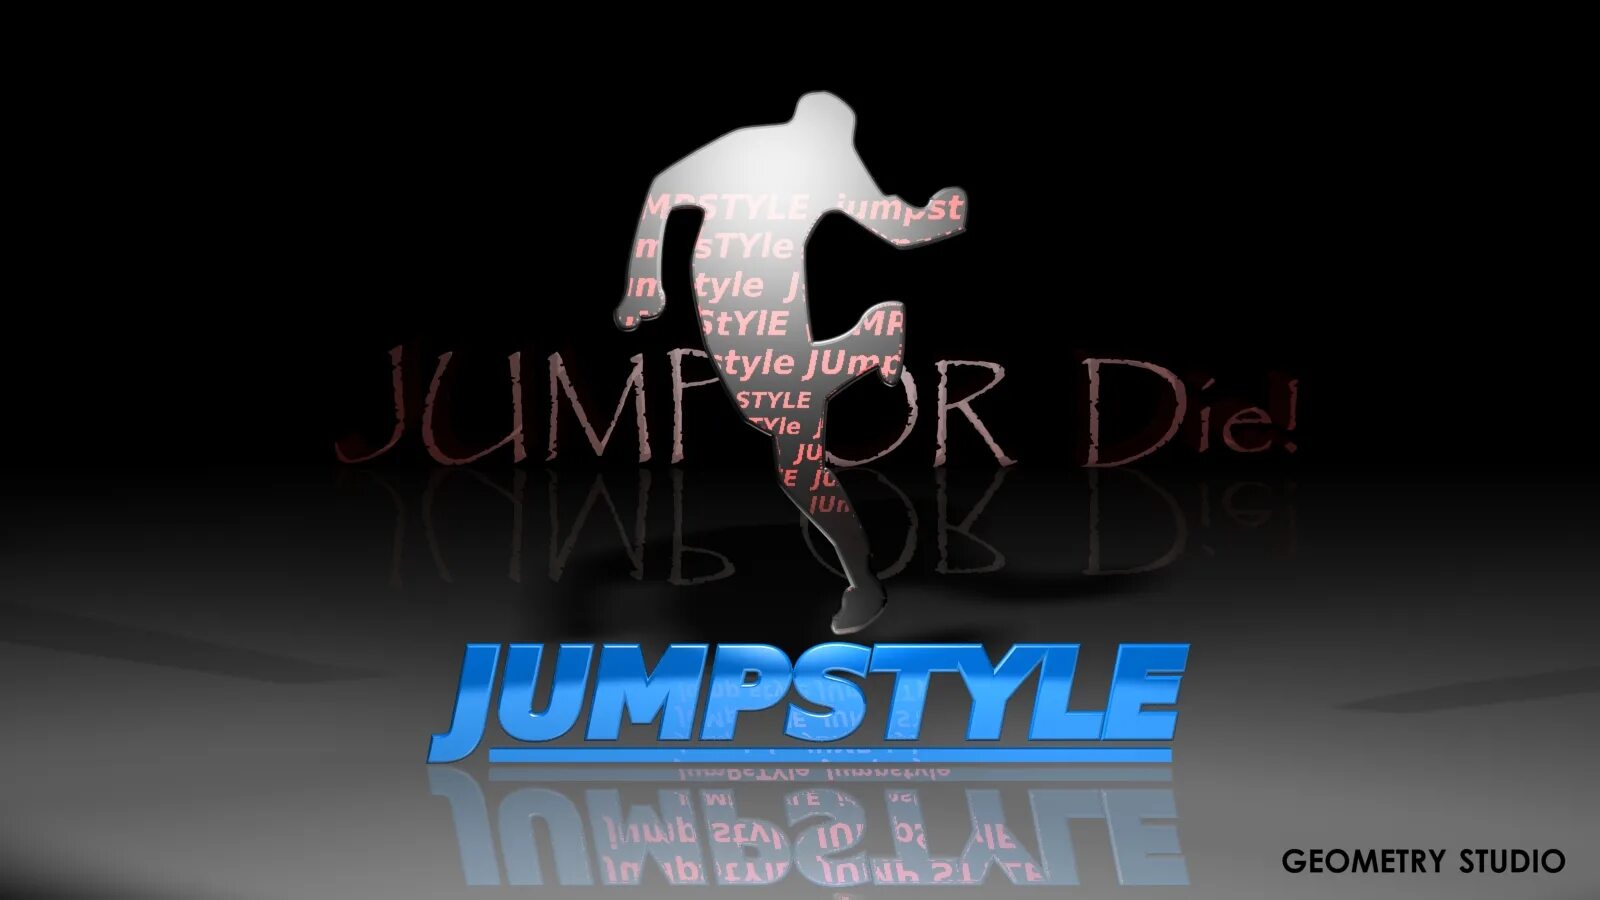 Стиль Jumpstyle. Патч Jumpstyle. Логотип Jumpstyle. Джамп танец.